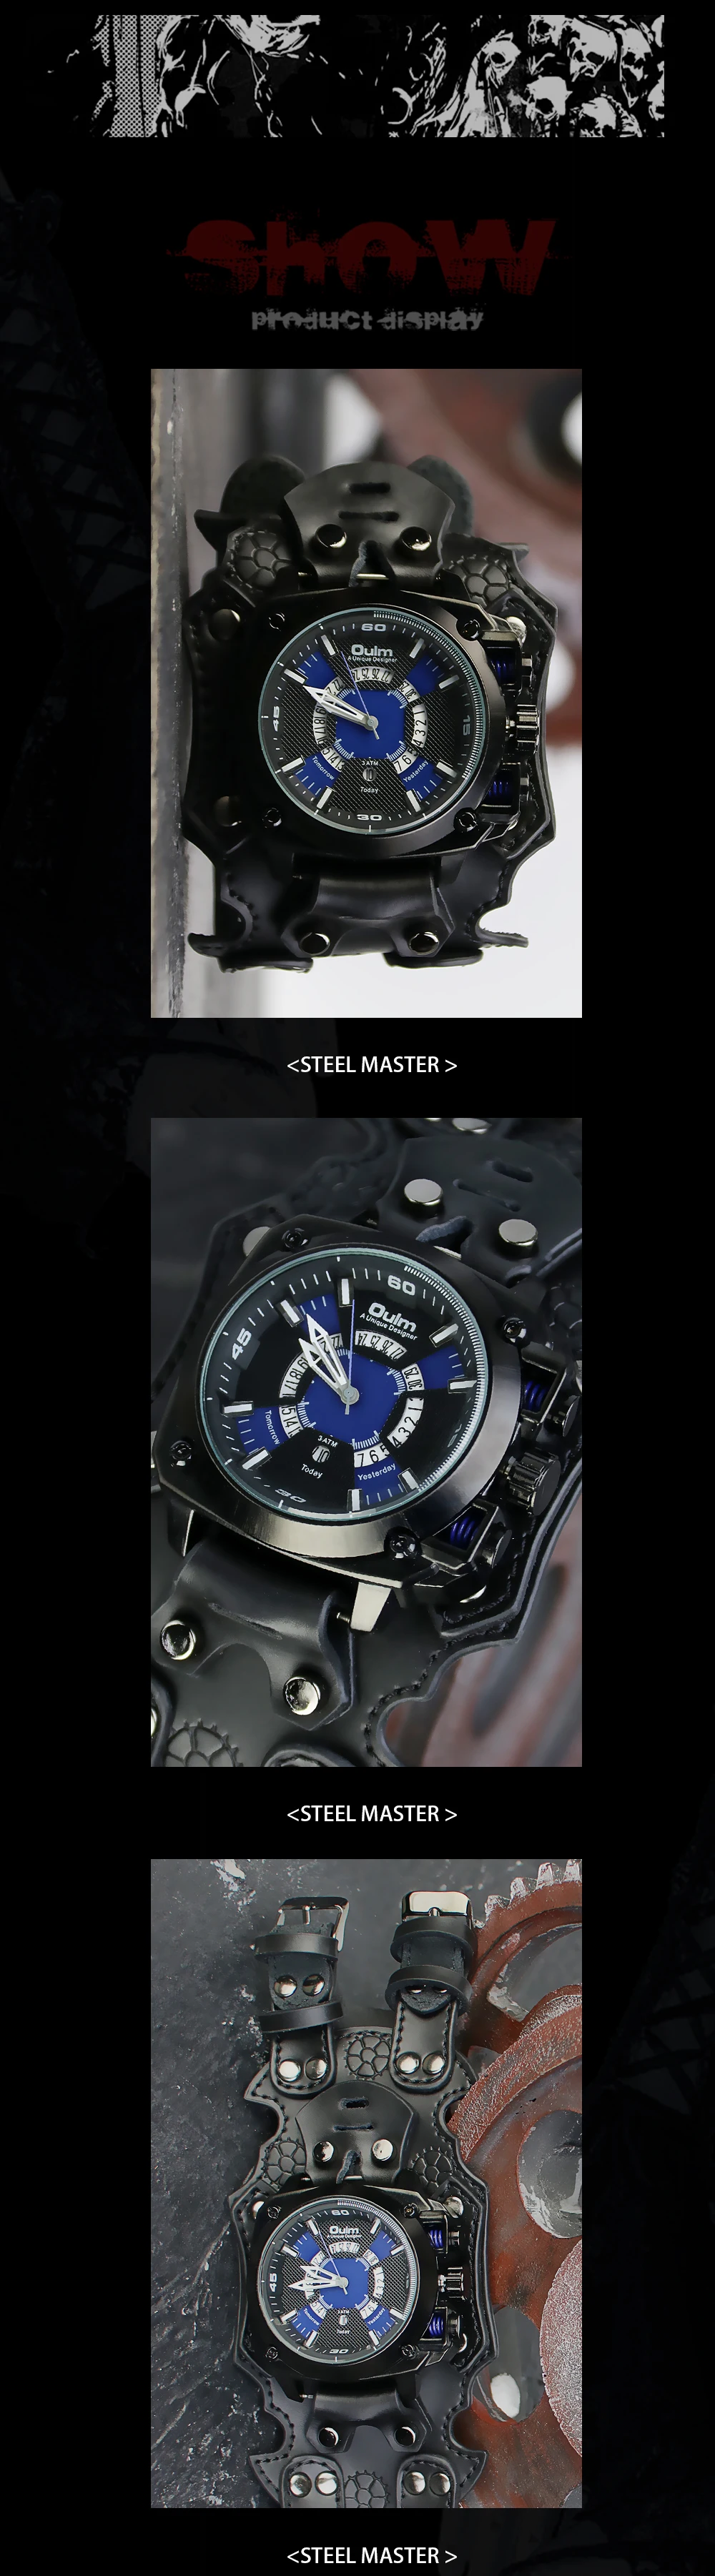 Новые роскошные механические часы мужские персональные спортивные стимпанк часы готические автоматические часы для мужчин